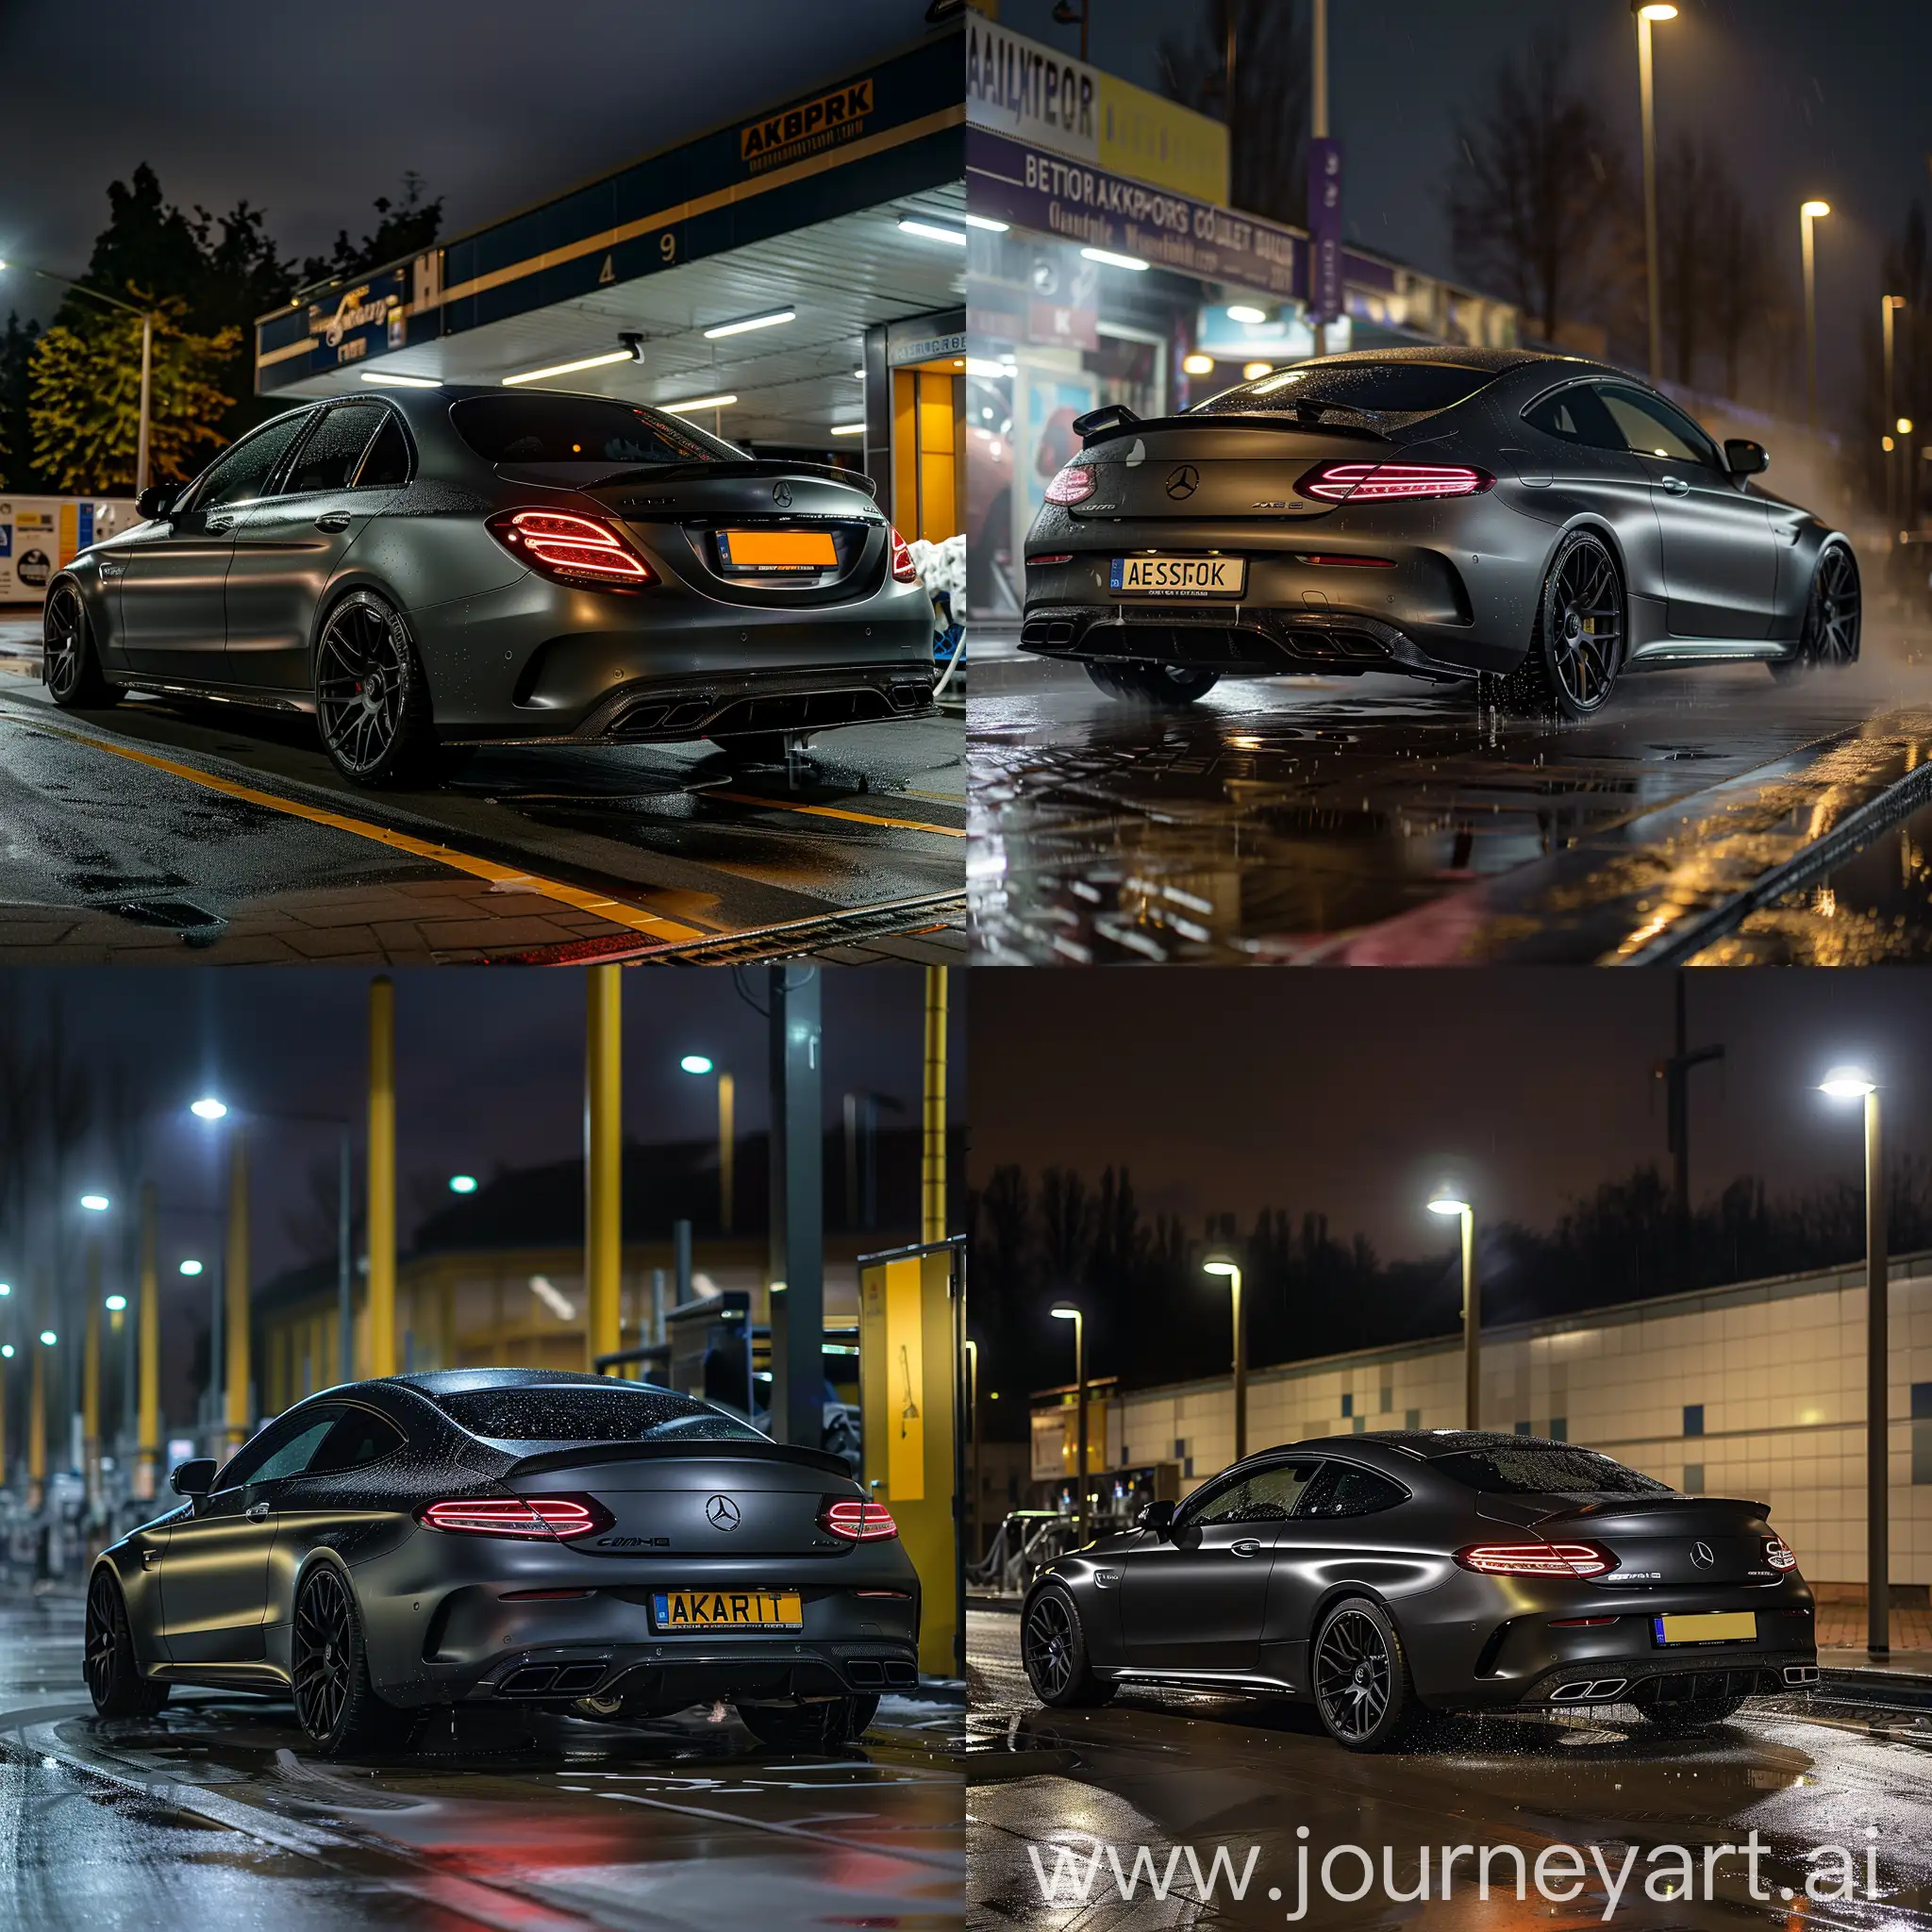 Wallpaper van Mercedes c63s 2017 in mat grijs zwart kleur met zwarte velgen van achterkant gespot met akrapovic uitlaten grote in nacht naast car wash in Nederland night vibes AESTHETIC auto aan wassen